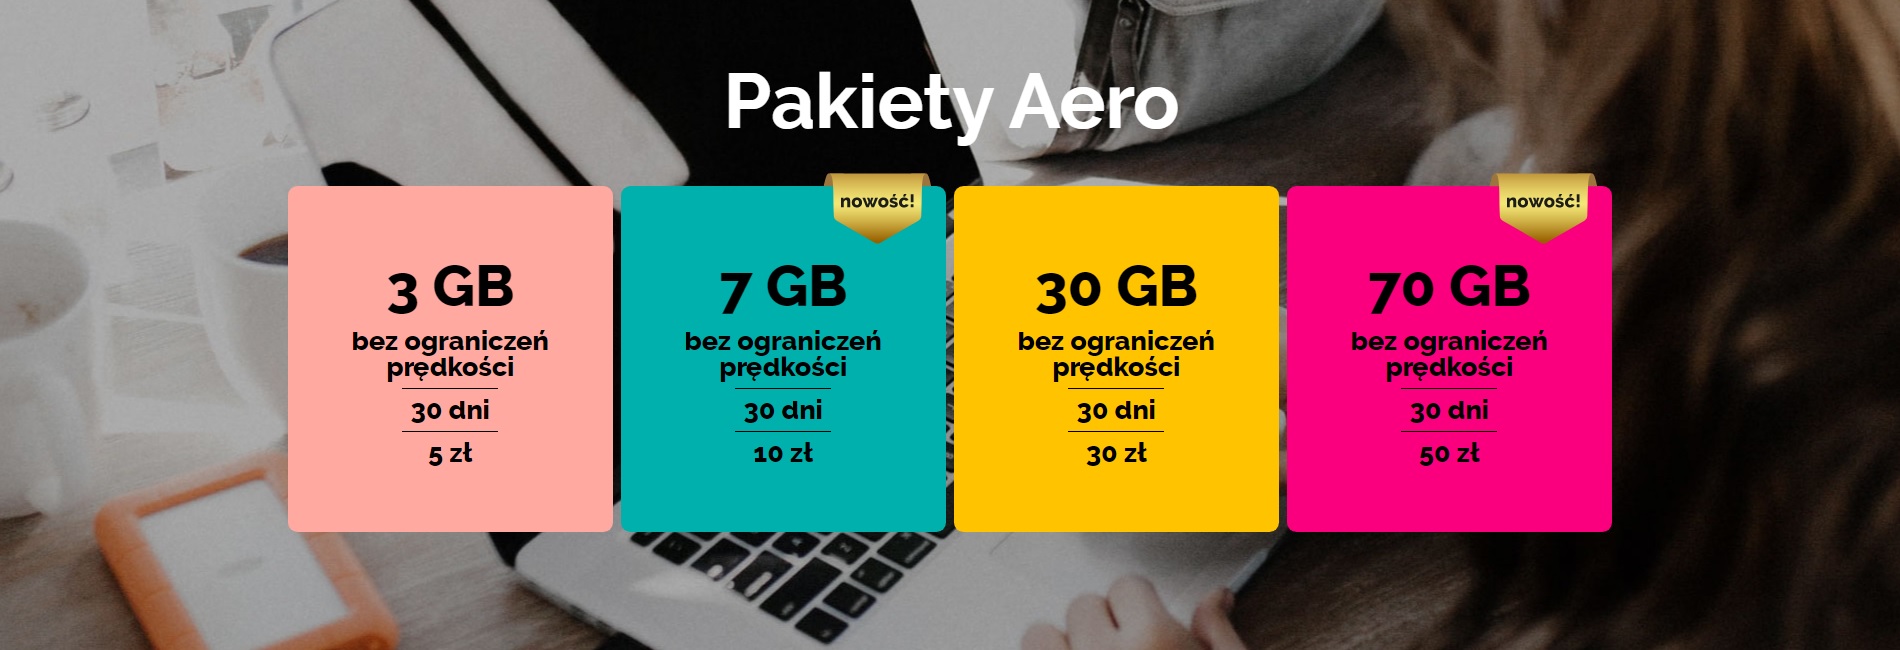 Aero2 pakiety Aero nowa oferta cennik 2021